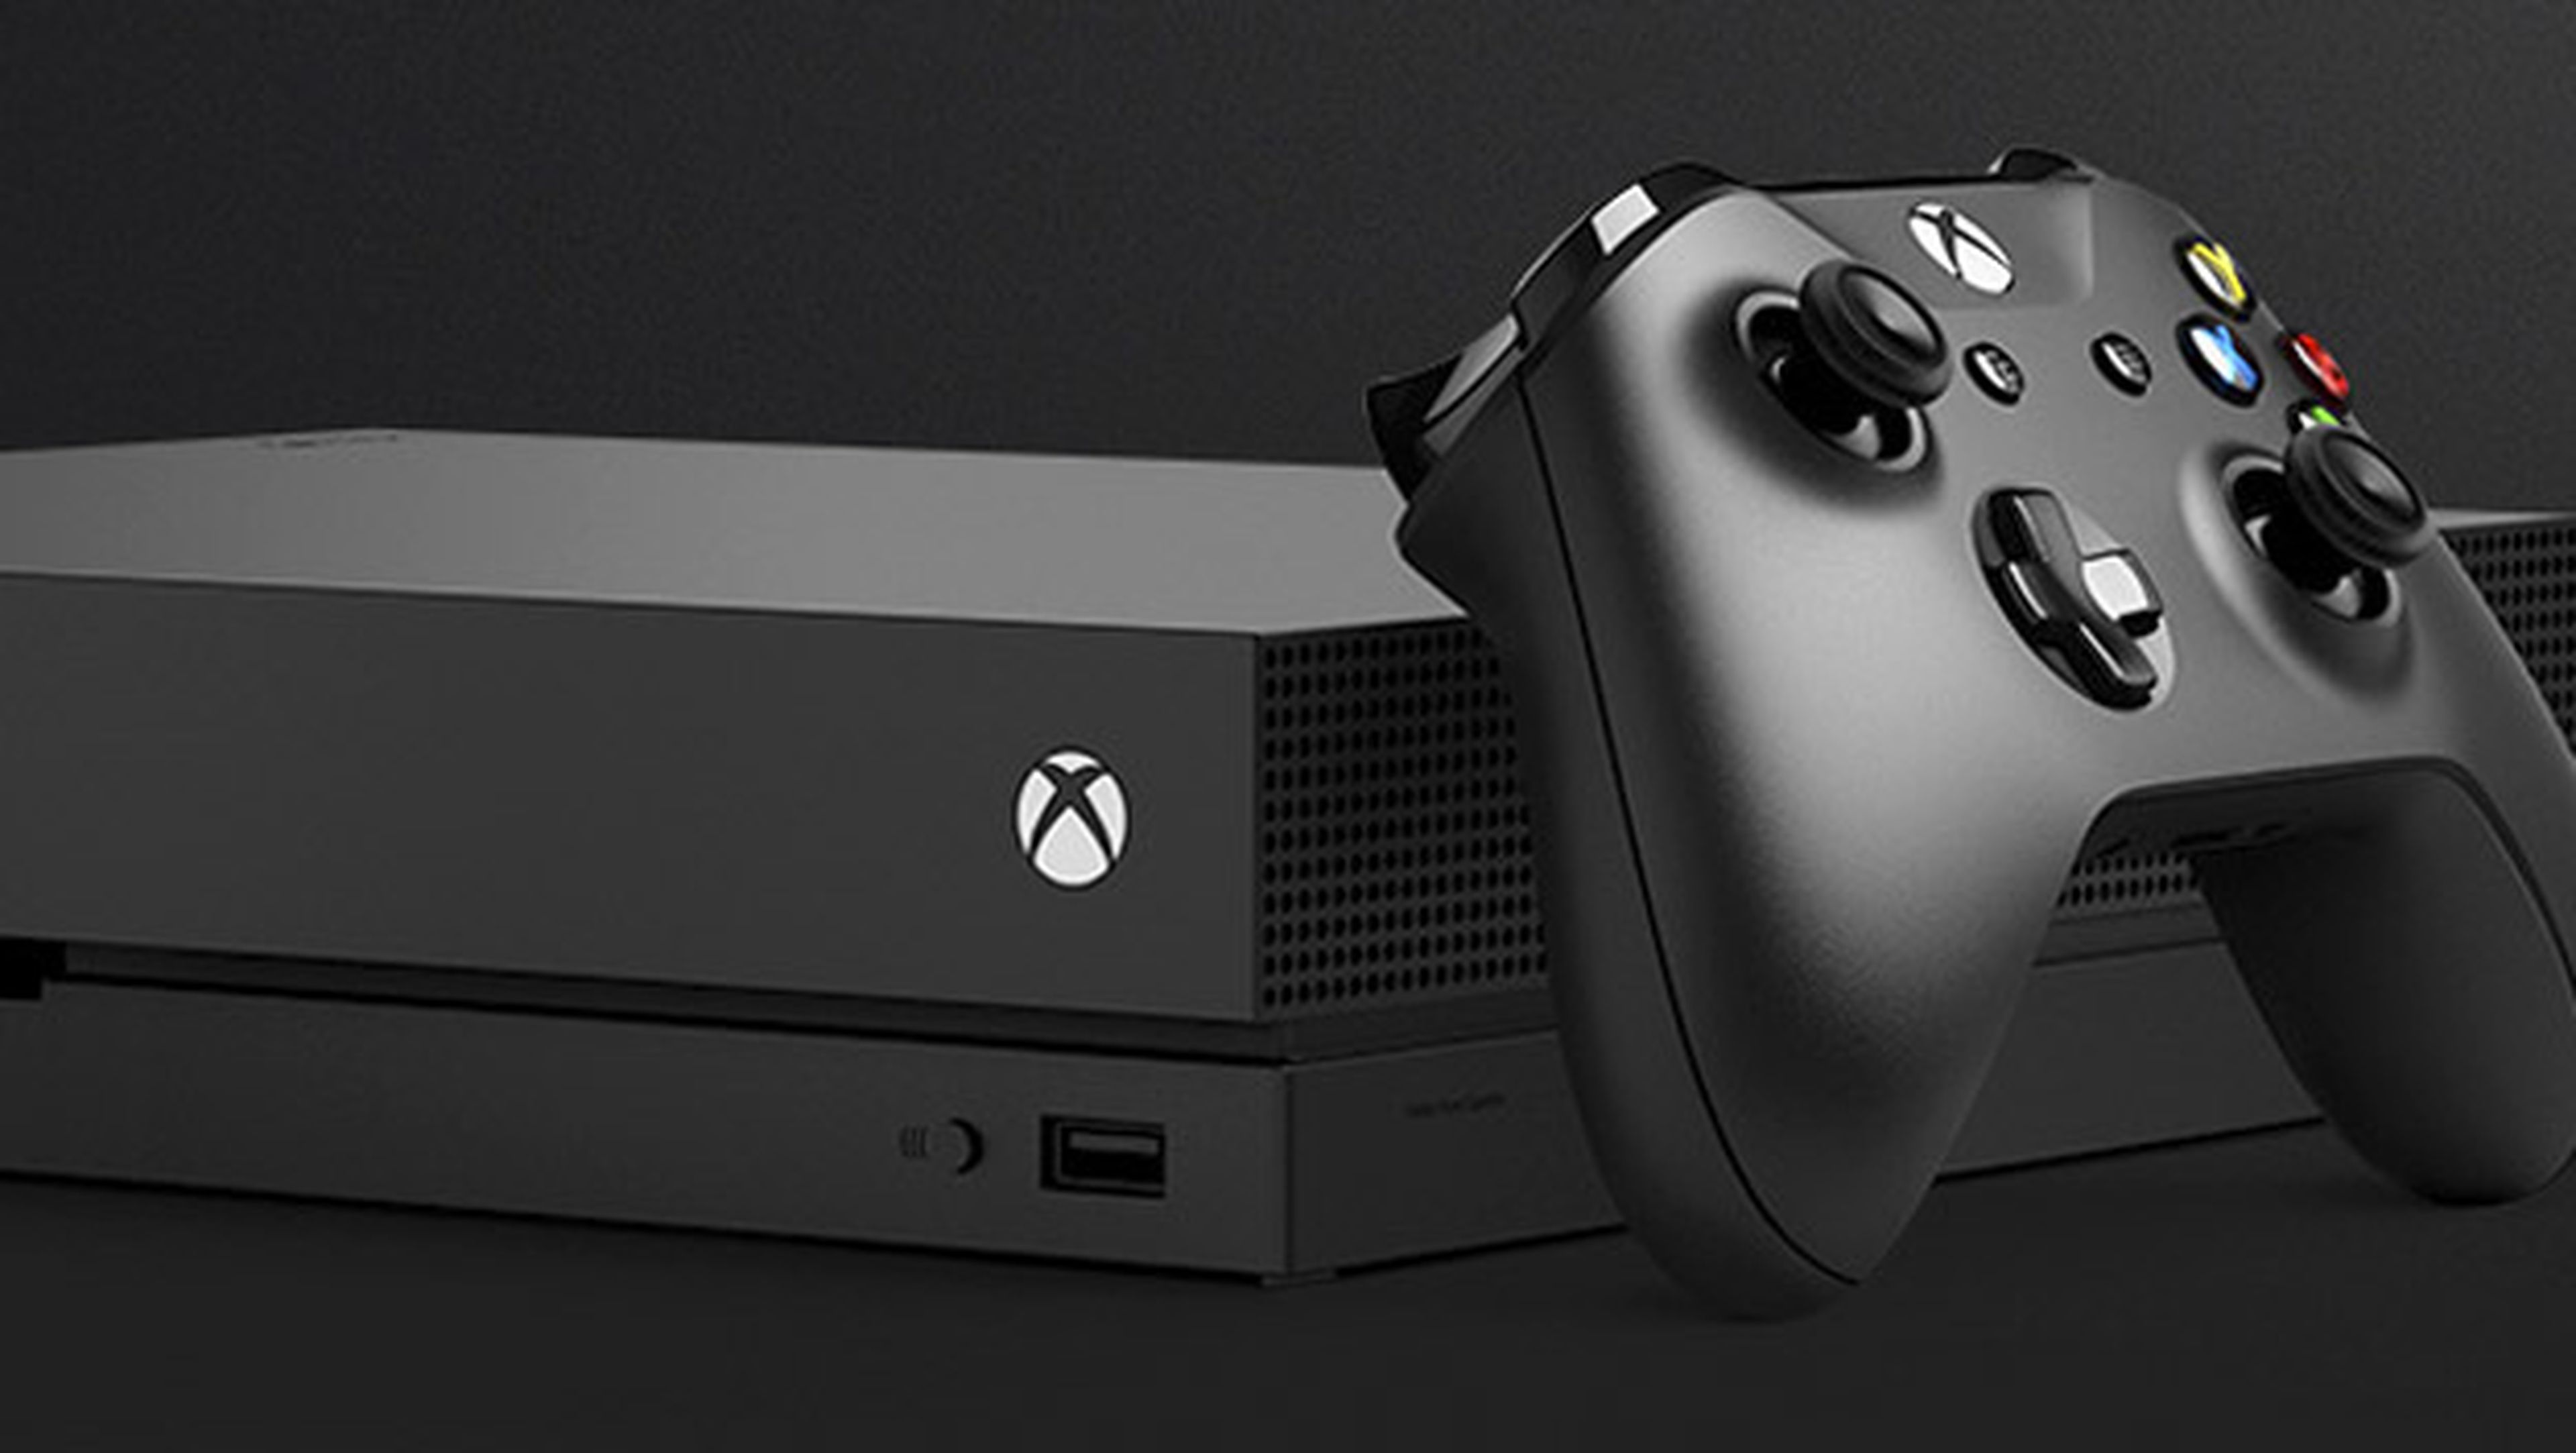 Prueba de Xbox One X, la consola más potente con 4K y HDR